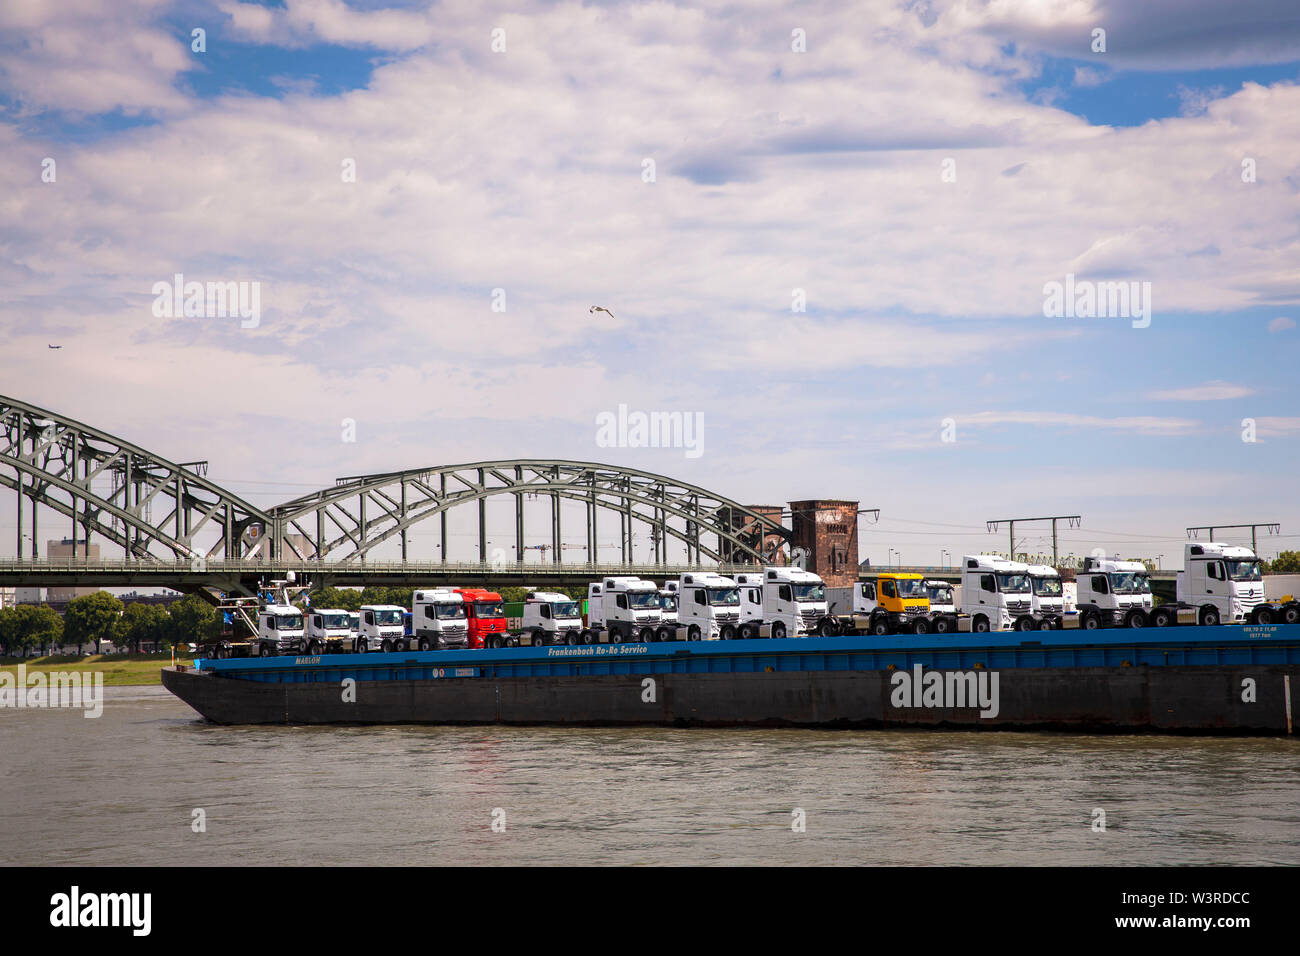 Frachtschiff mit Lastwagen am Rhein, Köln, Deutschland. Frachtschiff mit LKW mit dem Rhein, Suedbruecke, Koeln, Deutschland. Stockfoto